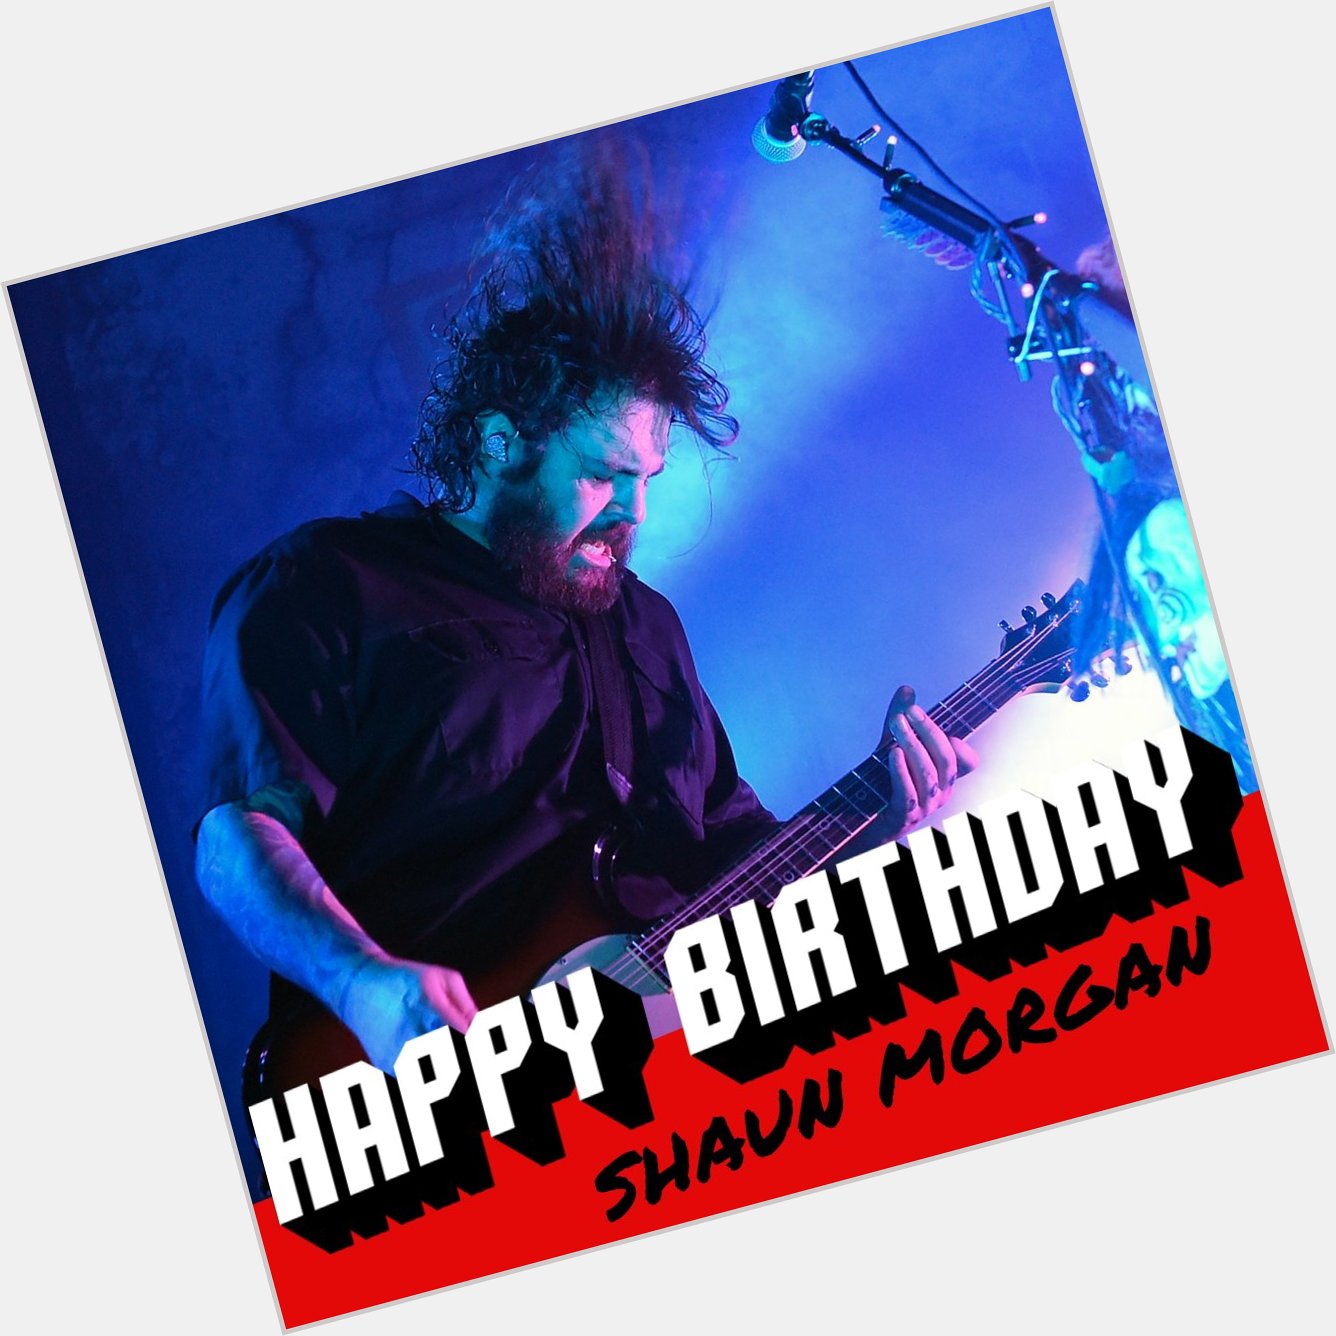 Happy birthday to Shaun Morgan!   